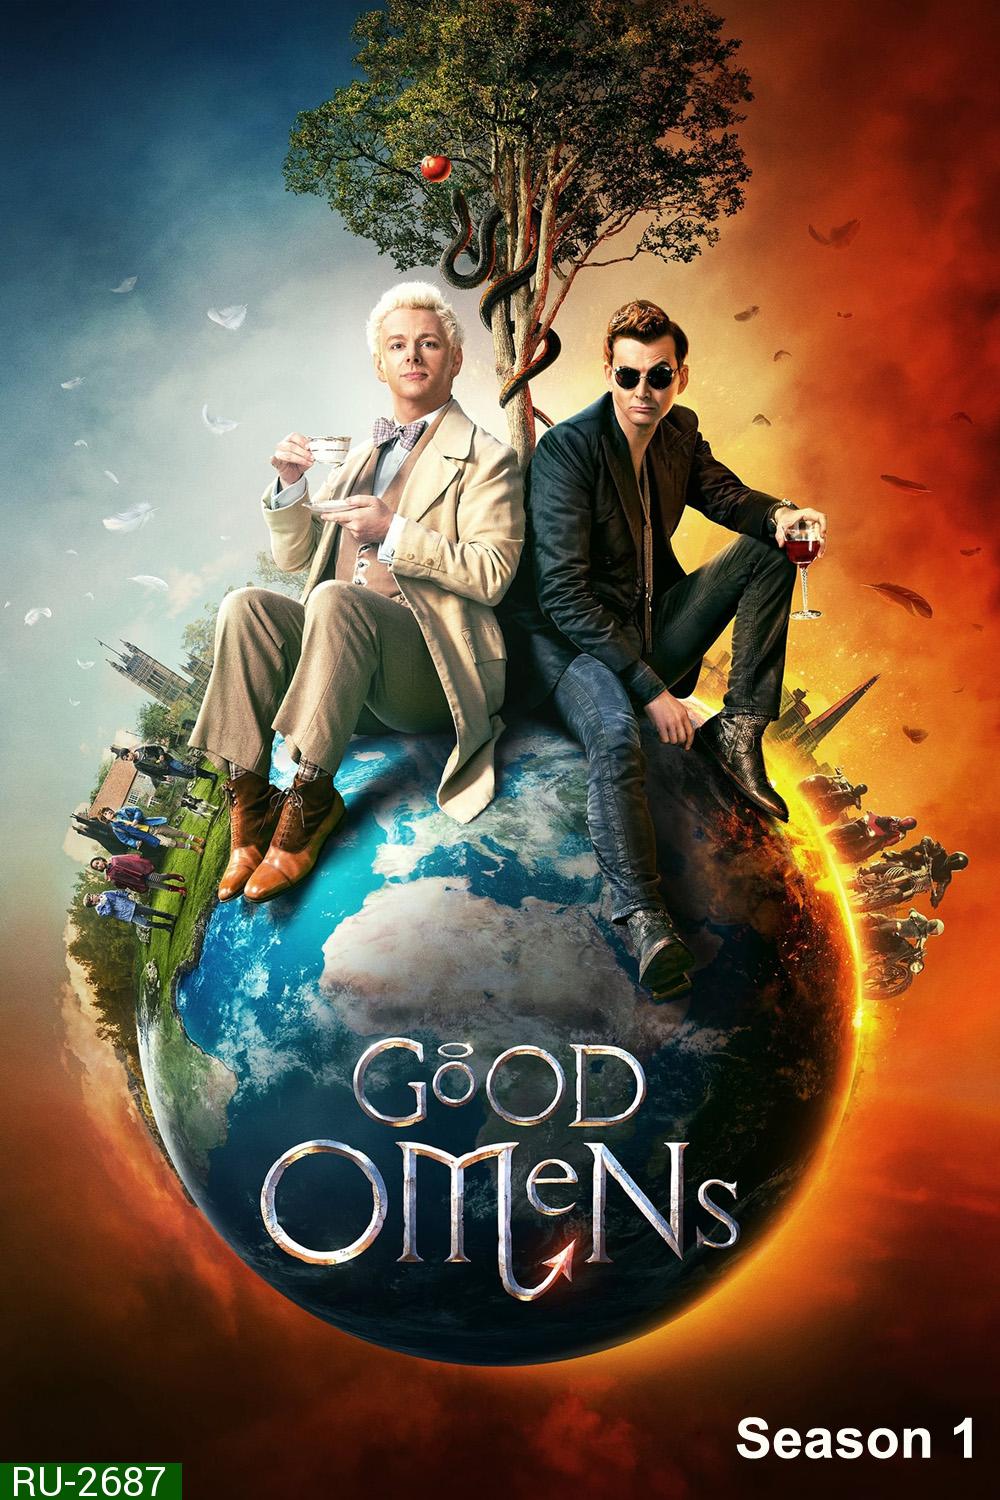 Good Omens Season 1 (2019) คำสาปสวรรค์ ปี 1 (6 ตอน)